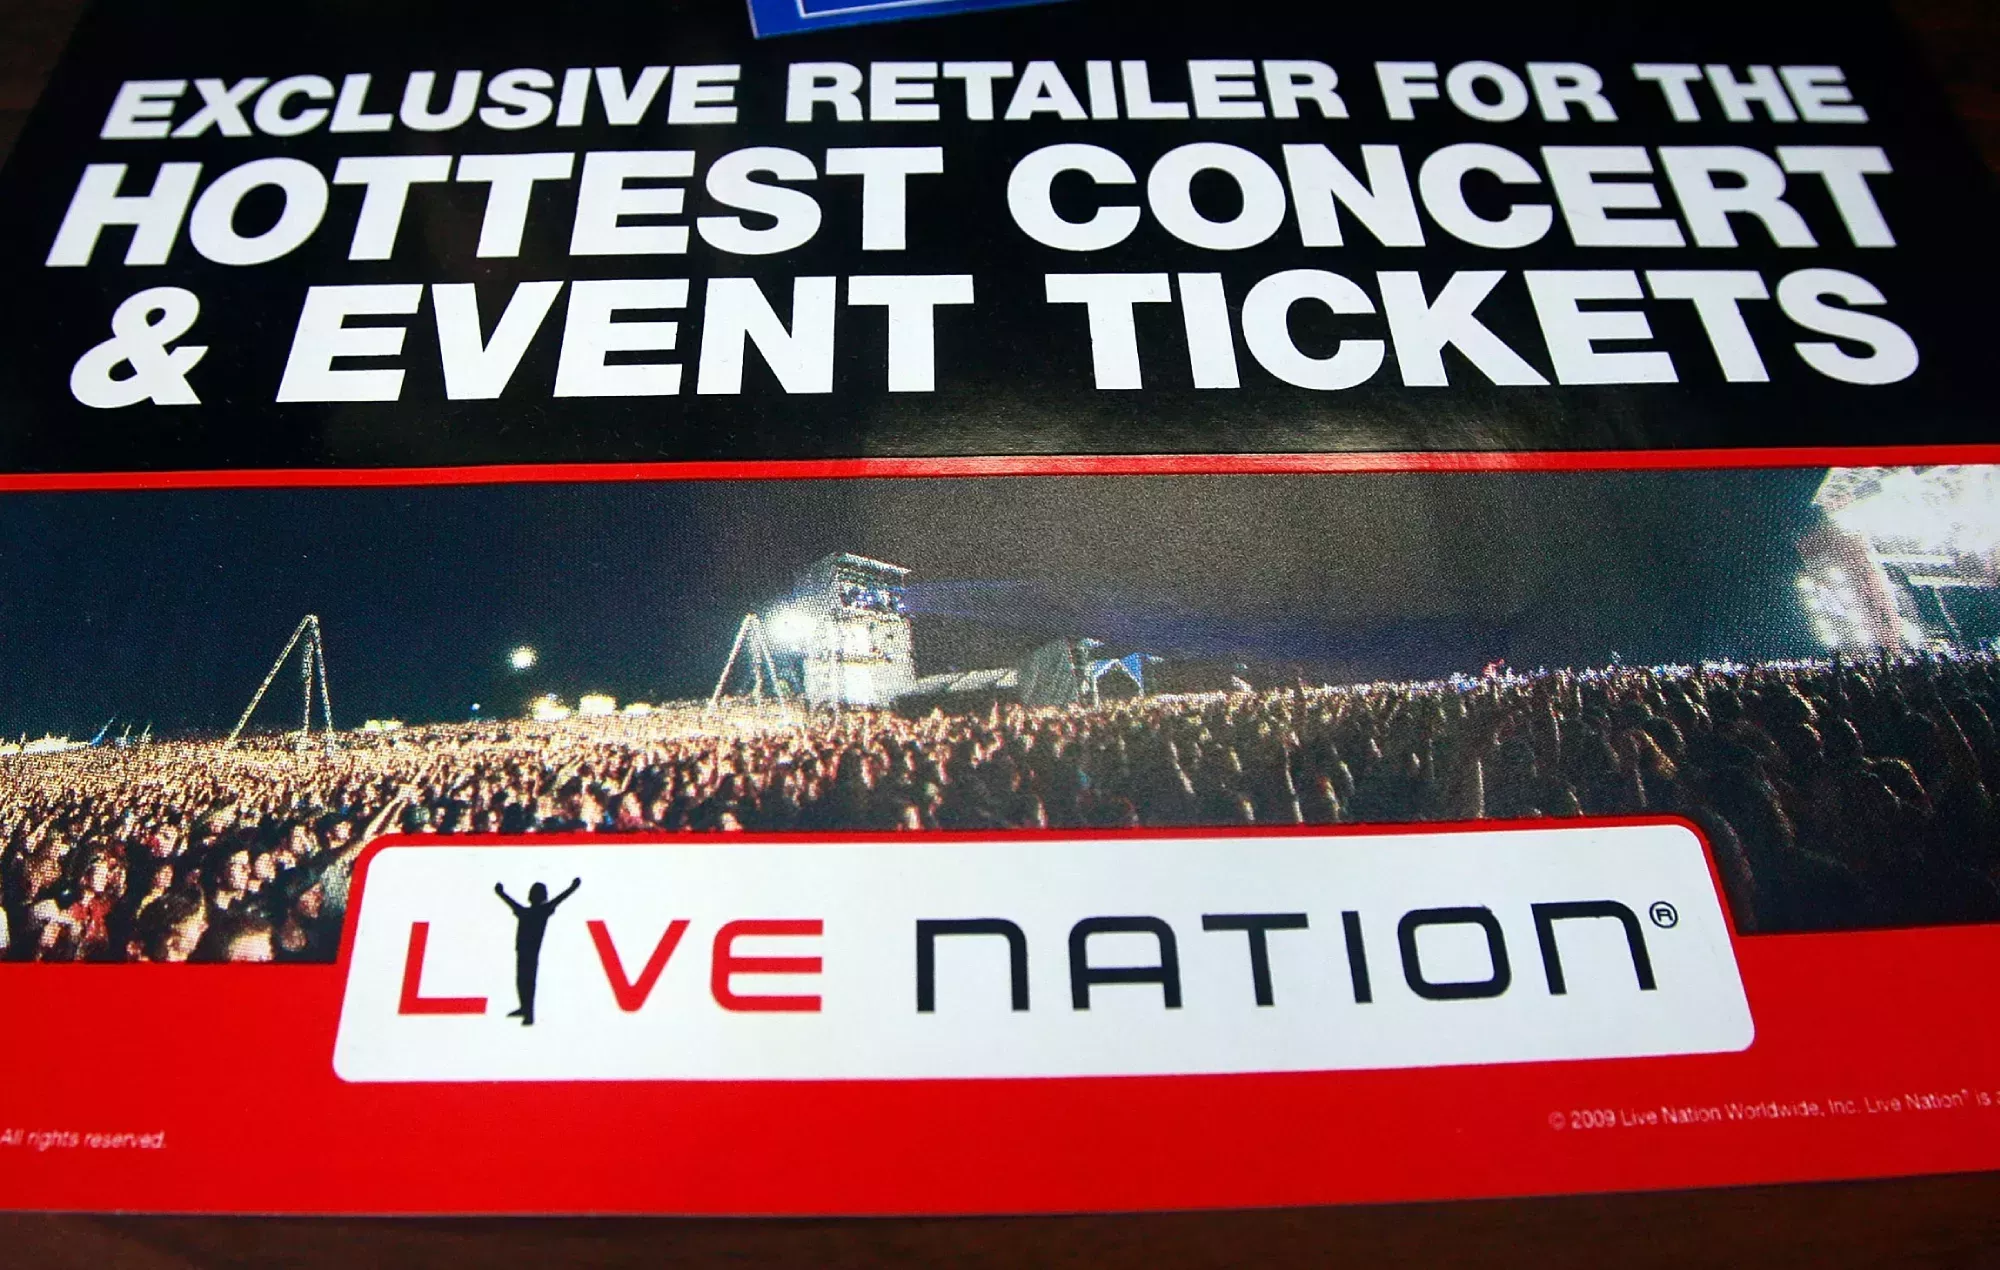 Live Nation informa de que 2023 será el año de mayor afluencia de público y venta de entradas, mientras que cada semana cierran dos locales de música popular